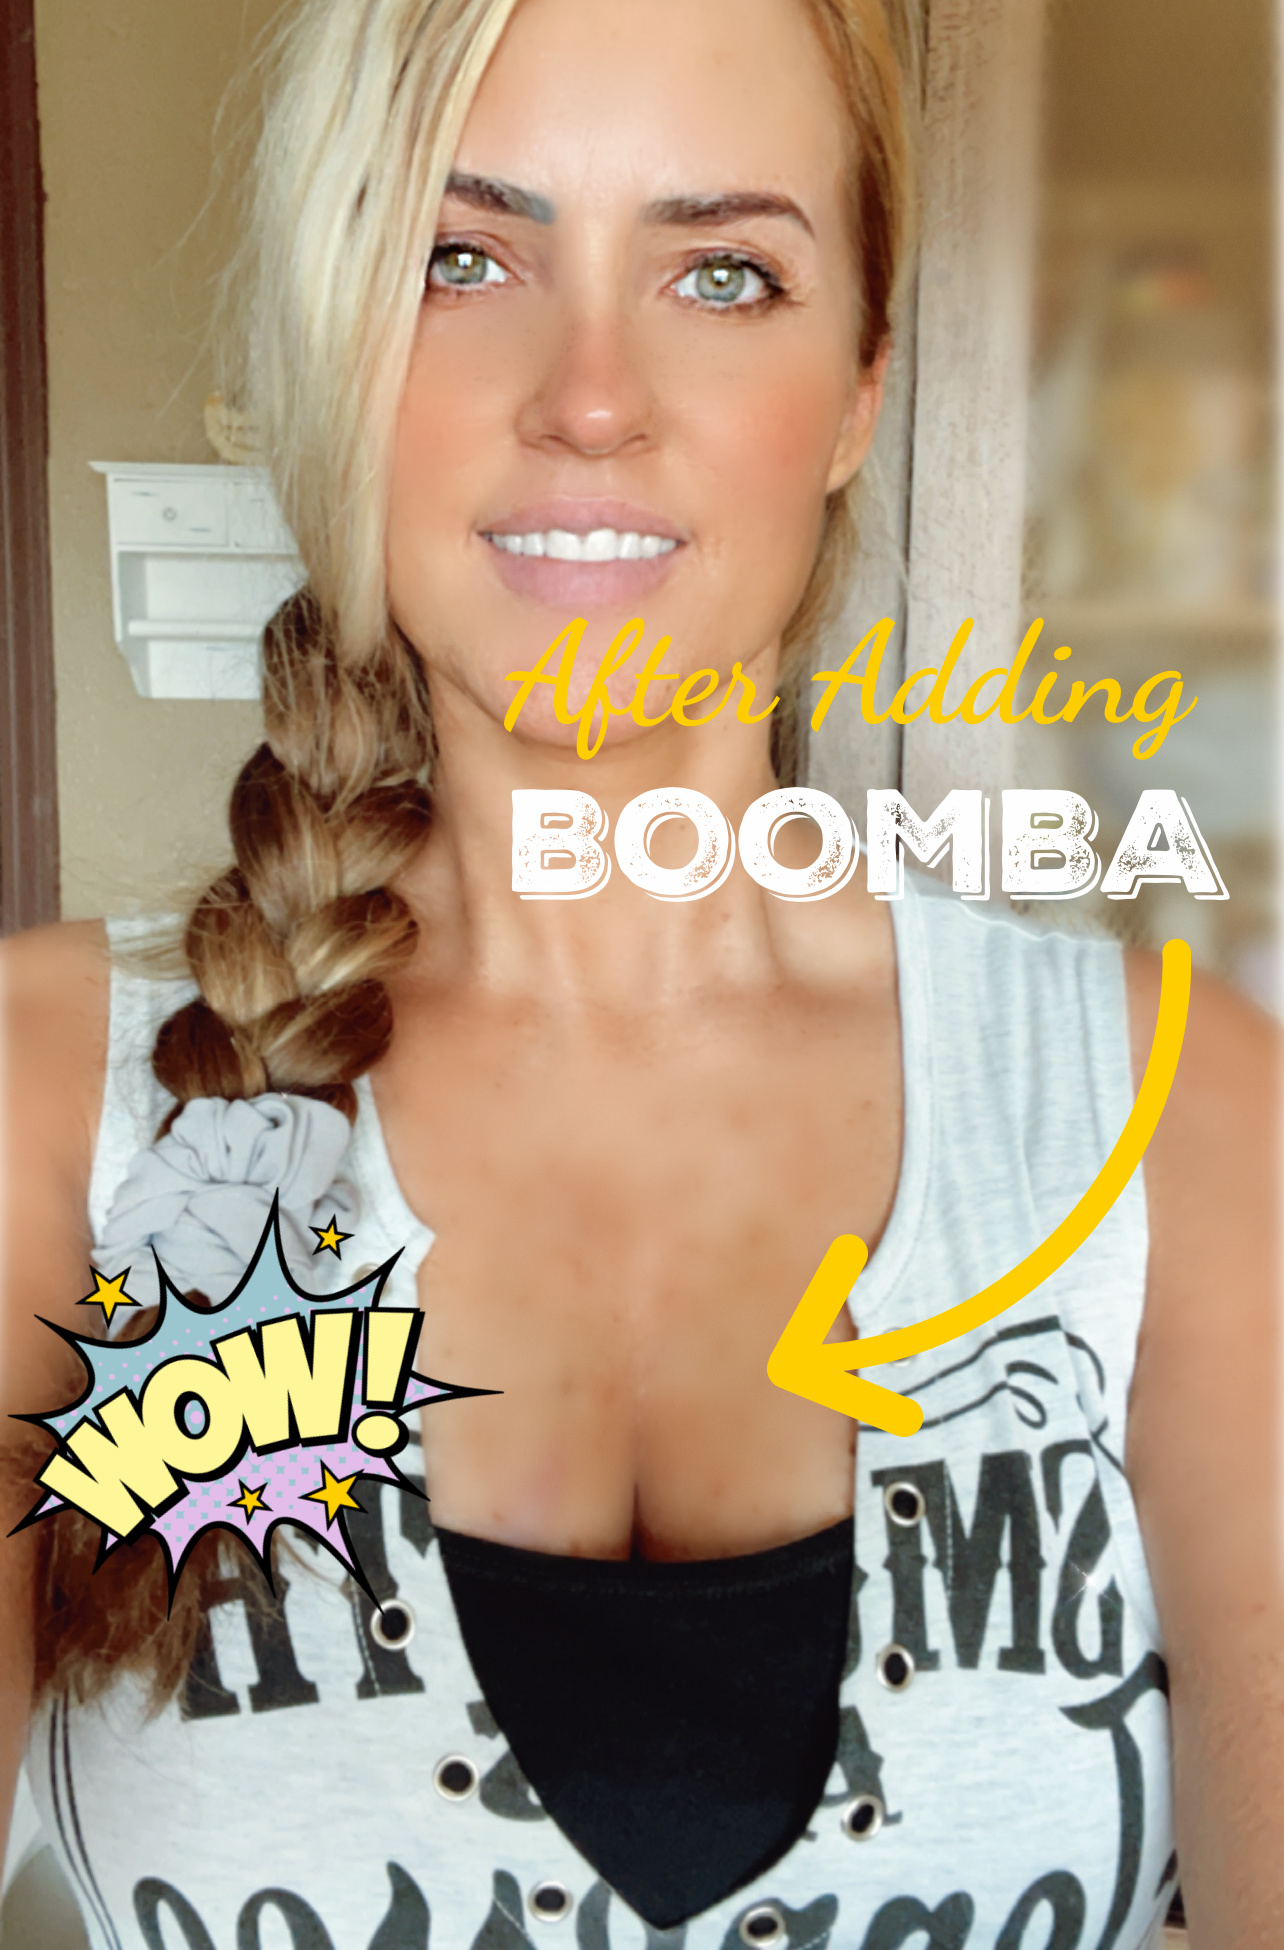 Boomba Ultra Boost Inserts Cocoa